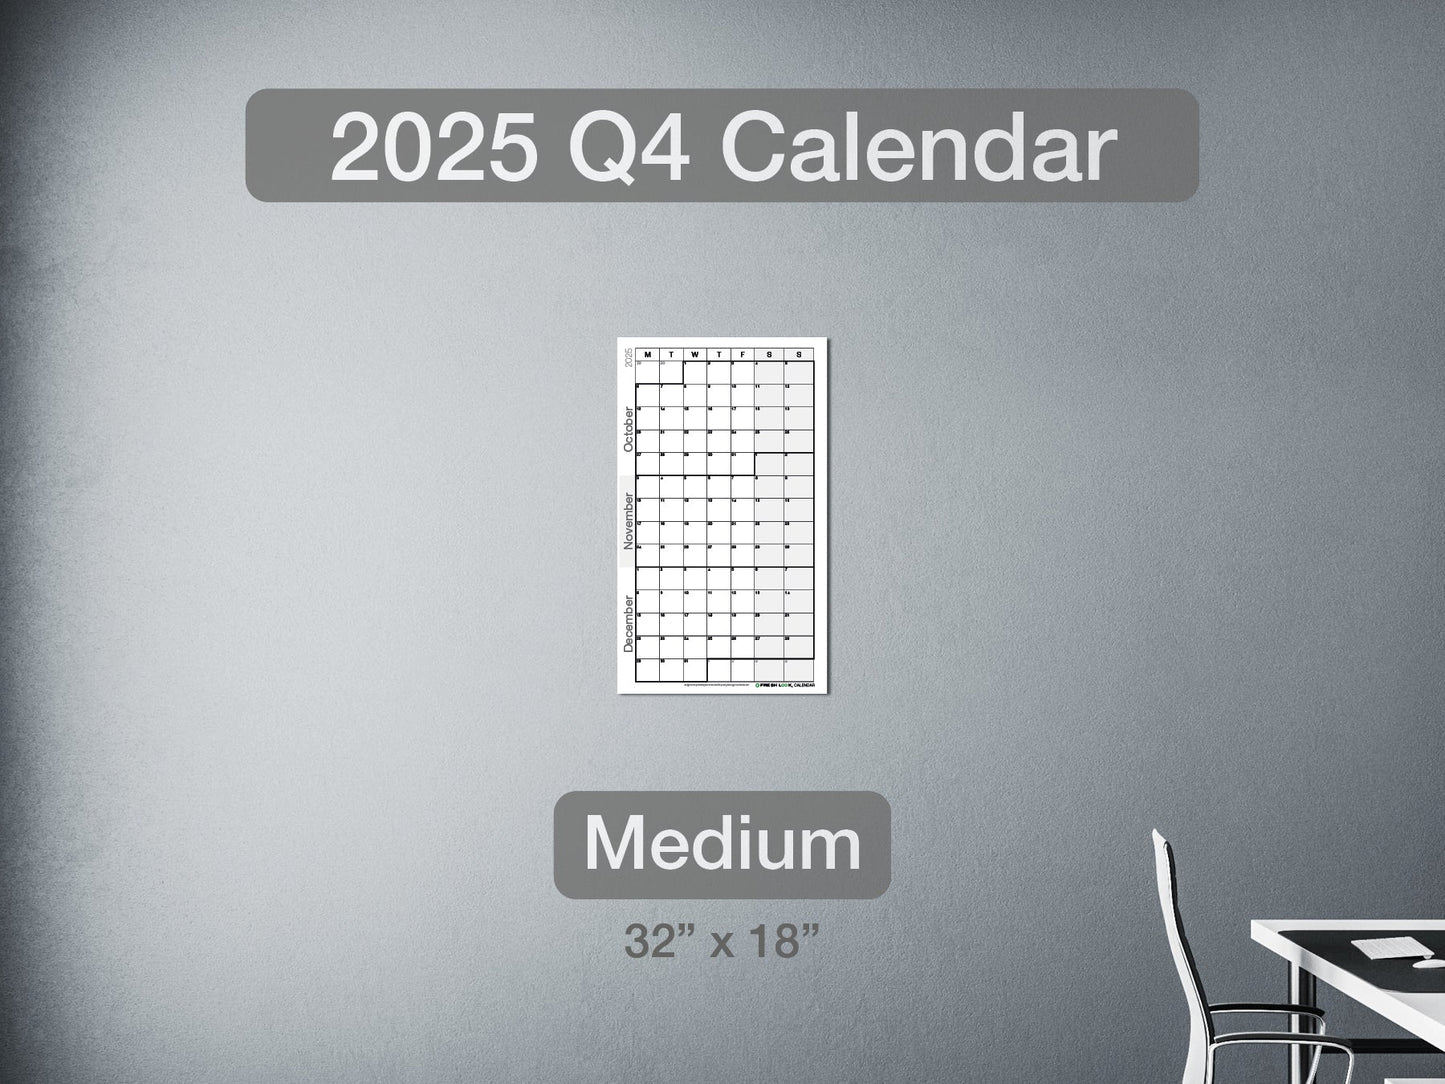 2025 Q4 Calendar Medium